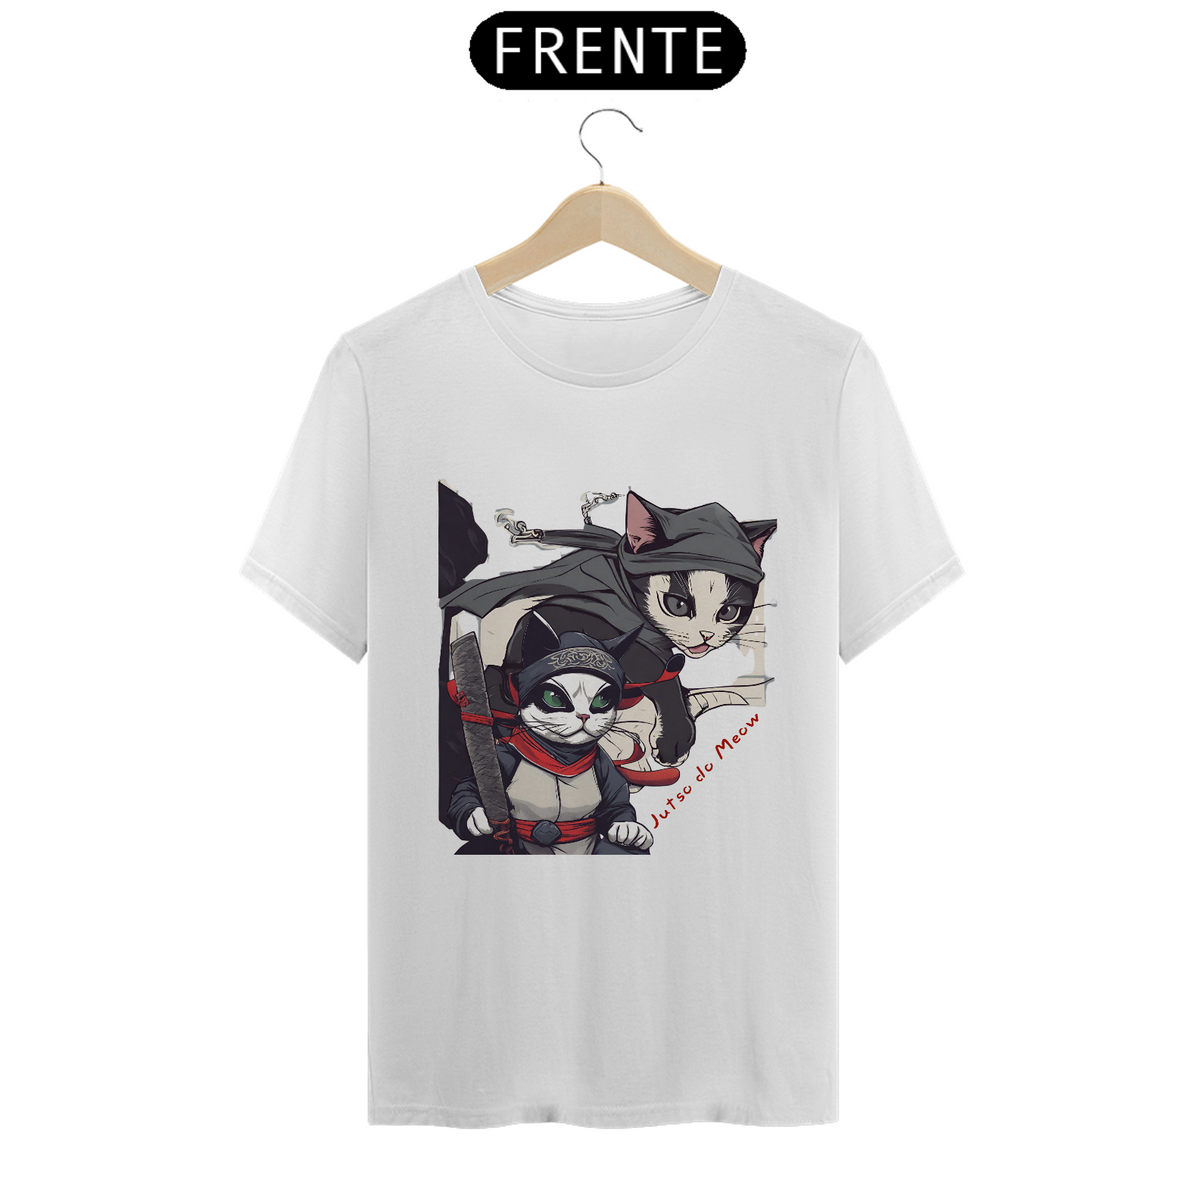 Nome do produto: Camiseta - Justo do Meow